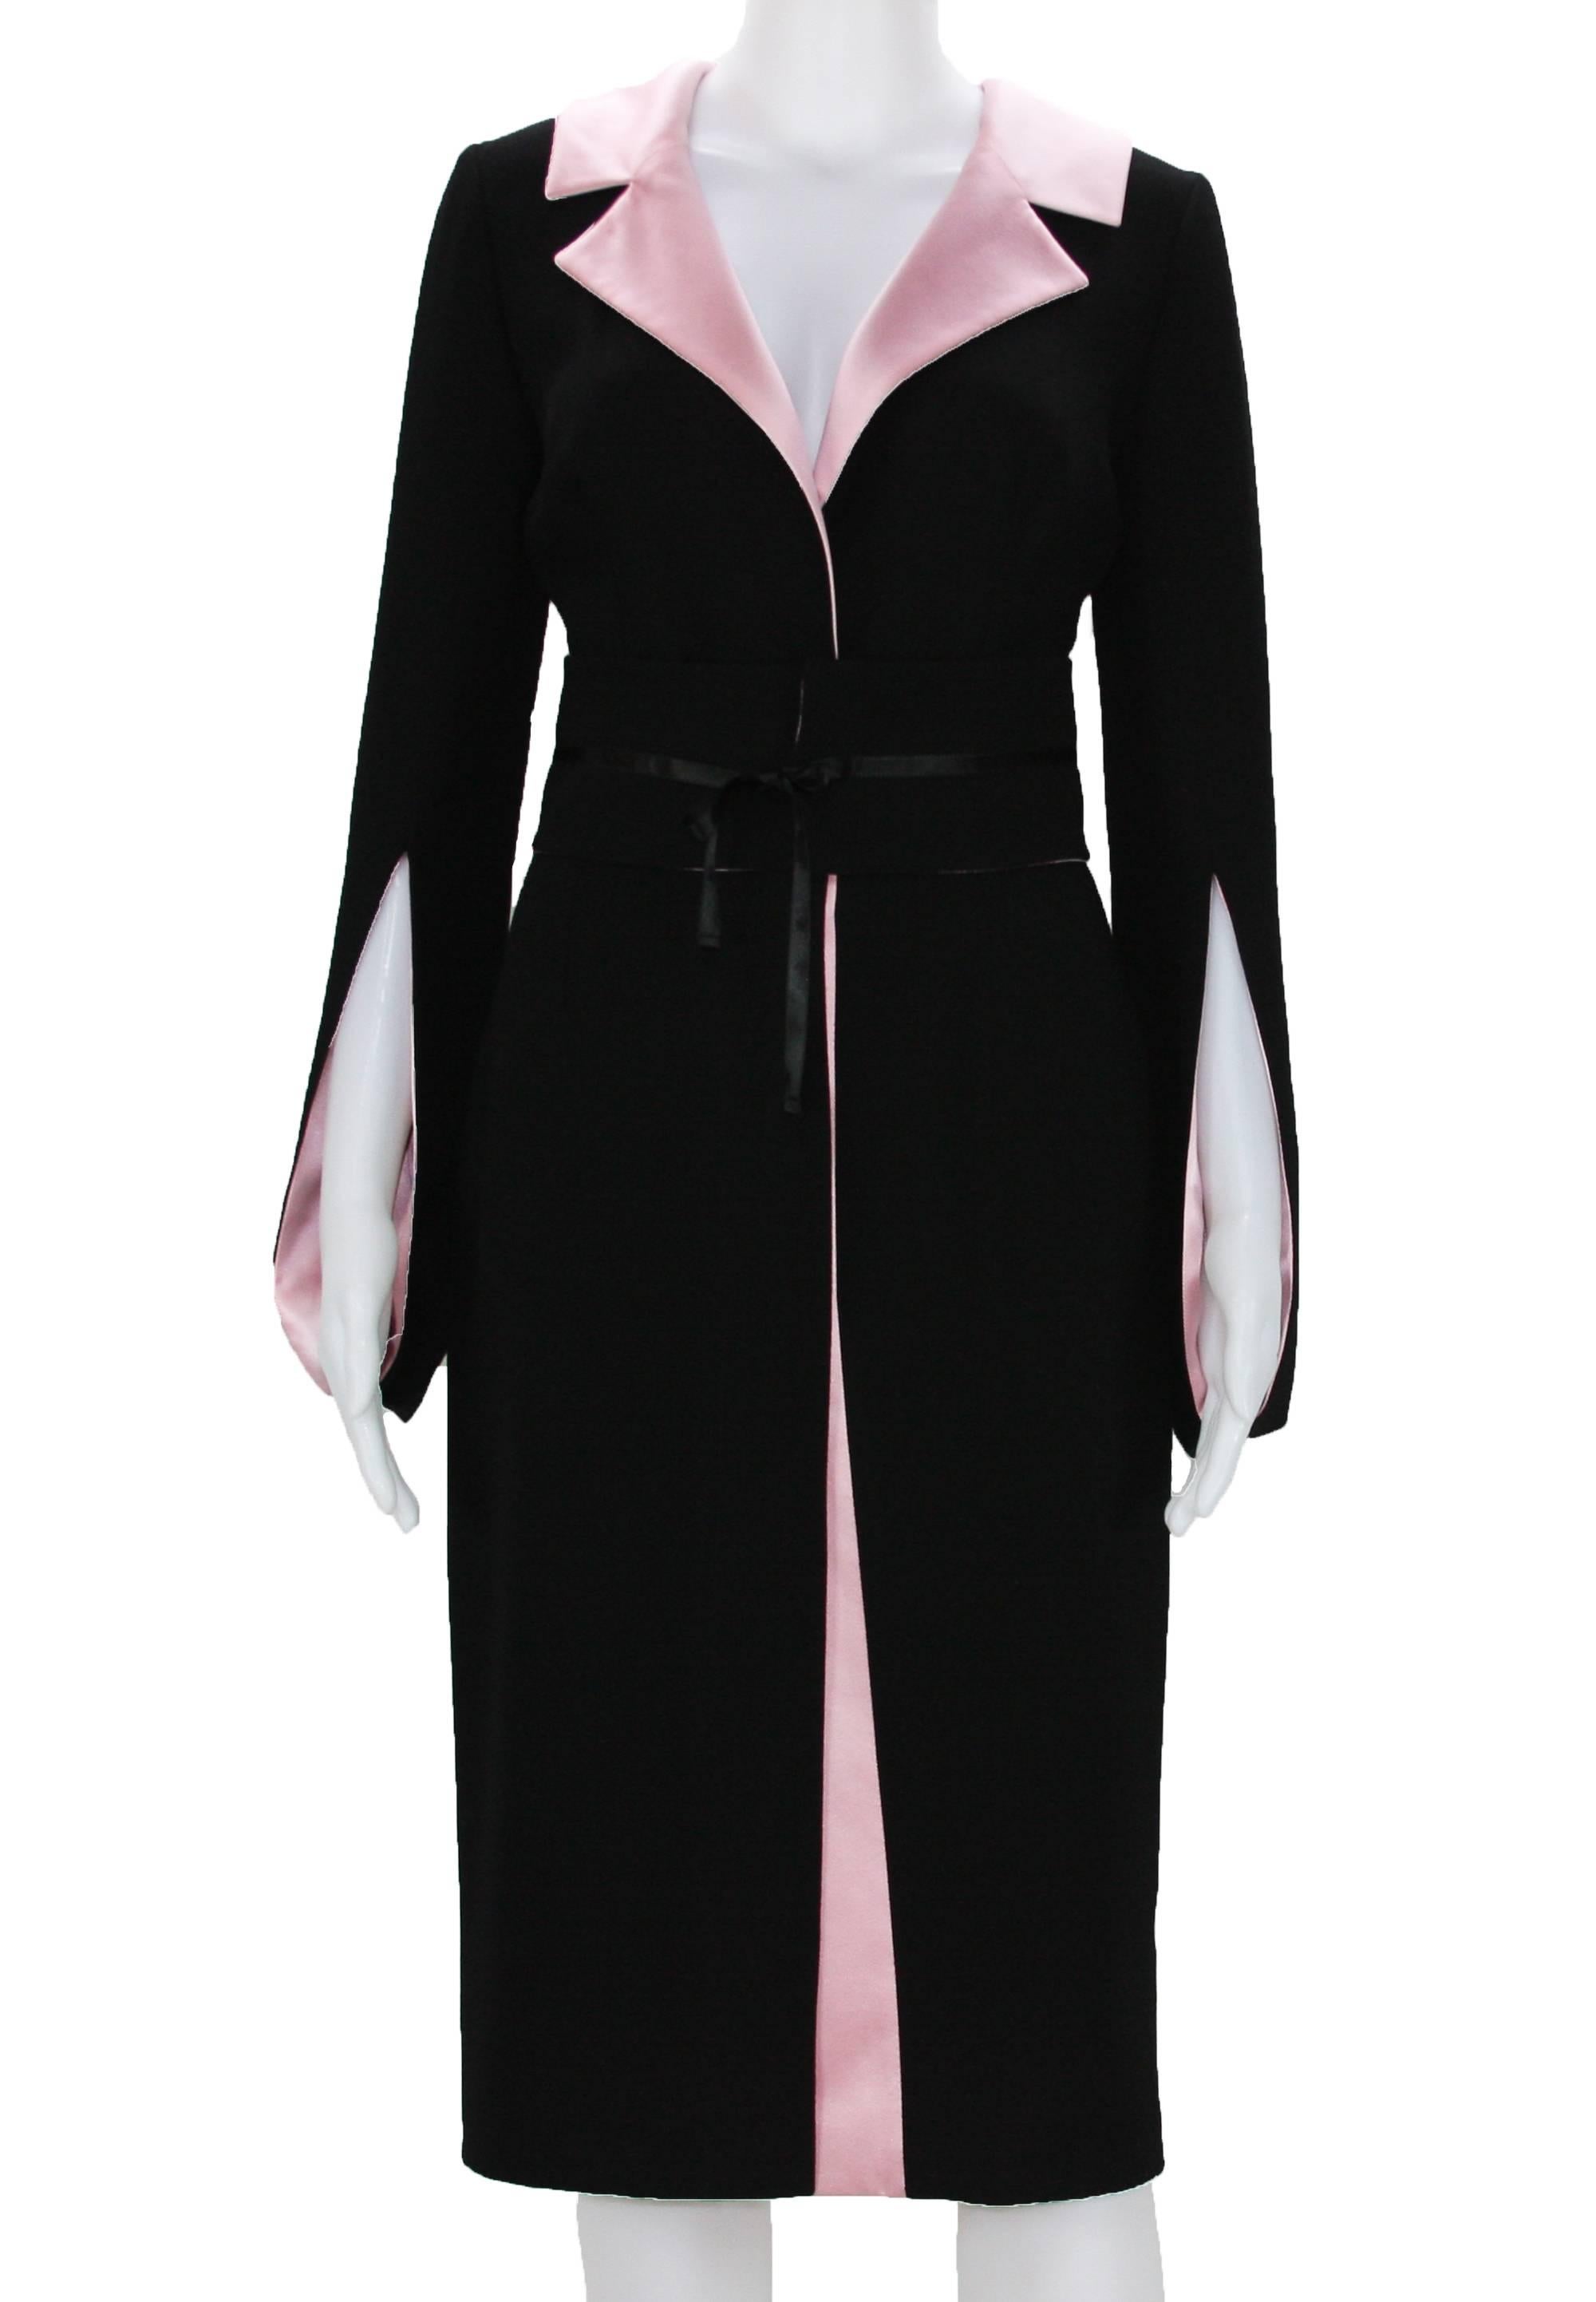 Les années 80 ne se démoderont jamais !!!
Balmain 80's Classic Black & Pink Wool Dress with Belt
Taille 36 - US 4
100% laine
Doublure - 70% acétate, 30% soie.
Ceinture détachable (côté réversible - rose).
Manche unique de style kimono - entièrement